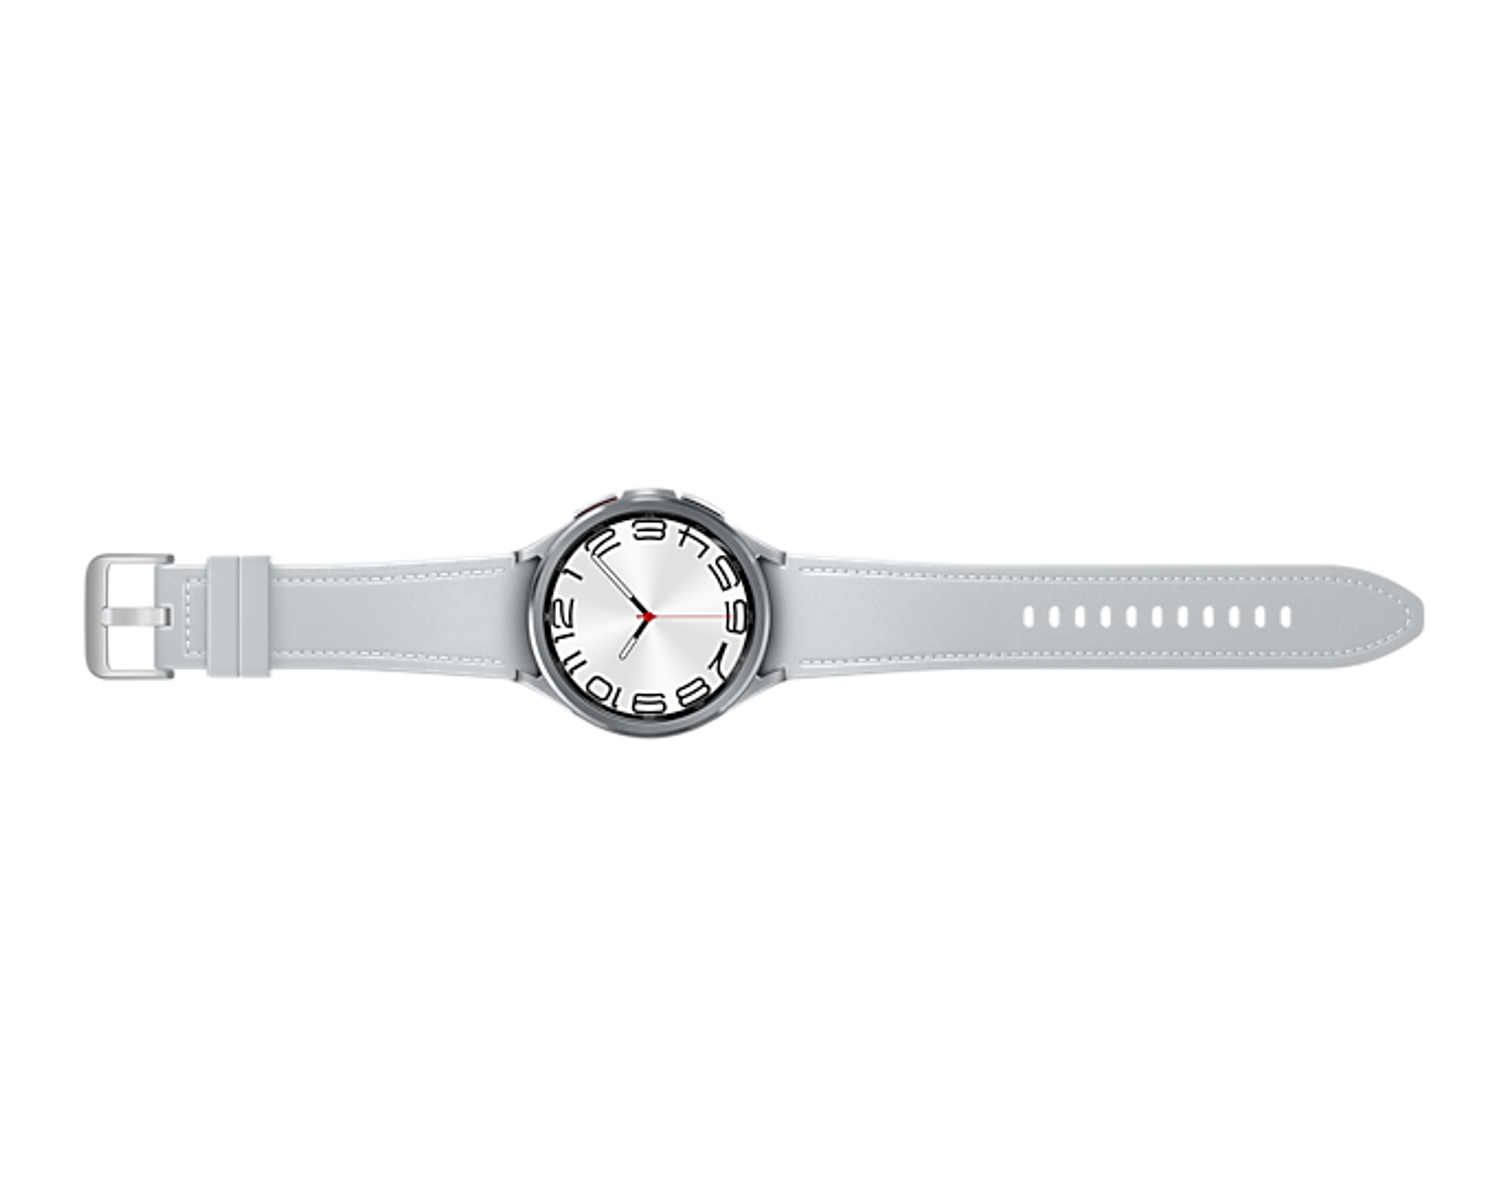 Silber Edelstahl, SAMSUNG Edelstahl SM-R965FZSAXEF Smartwatch